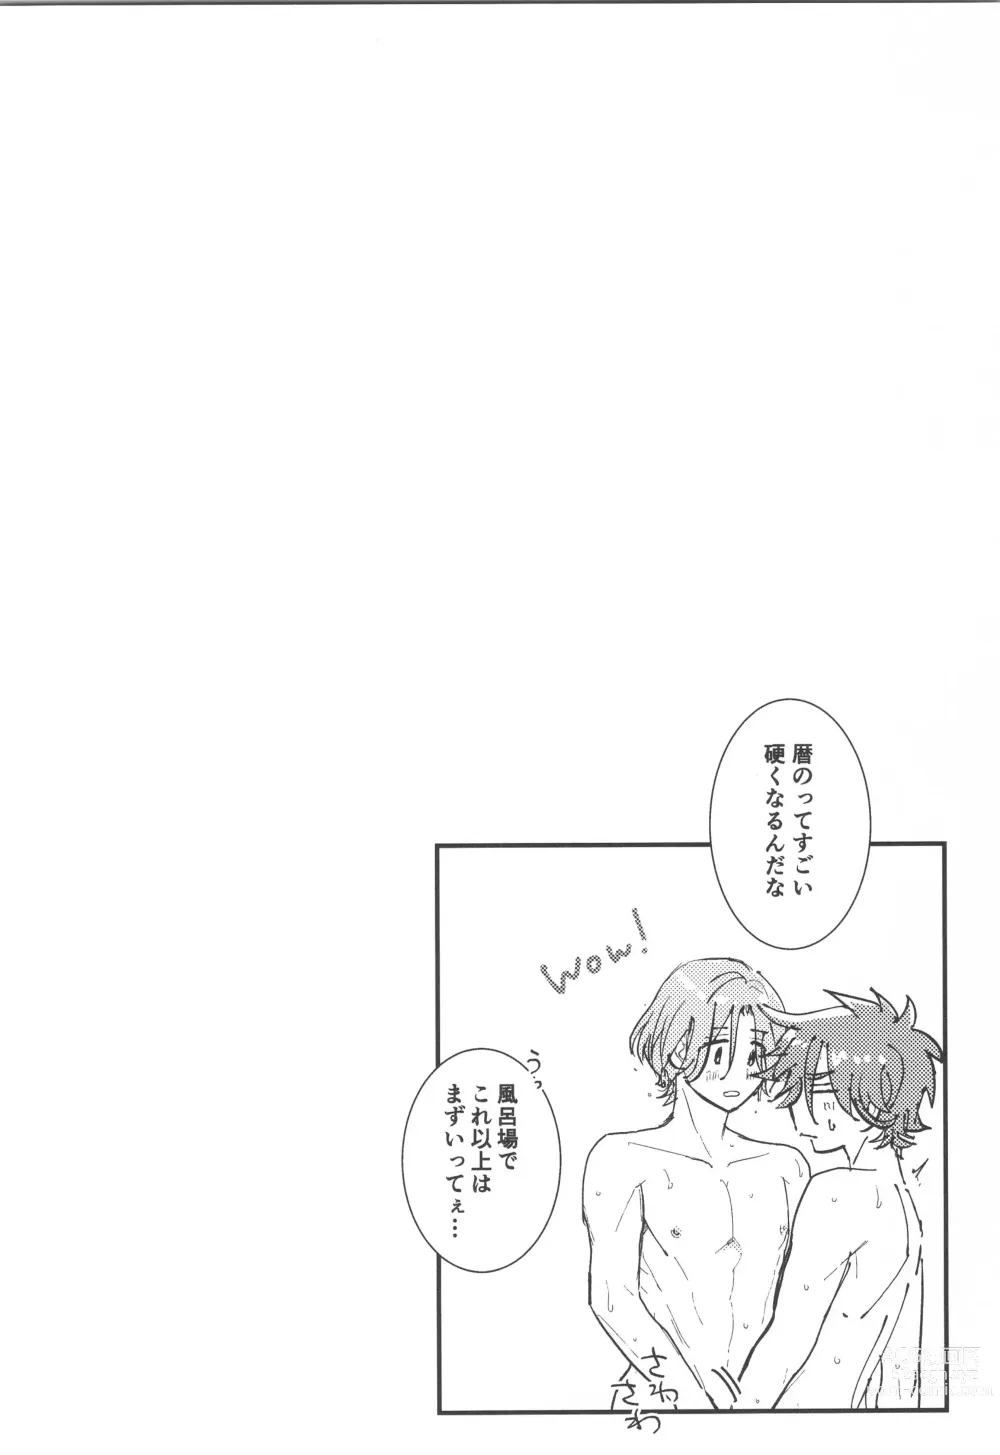 Page 15 of doujinshi Hodasare?